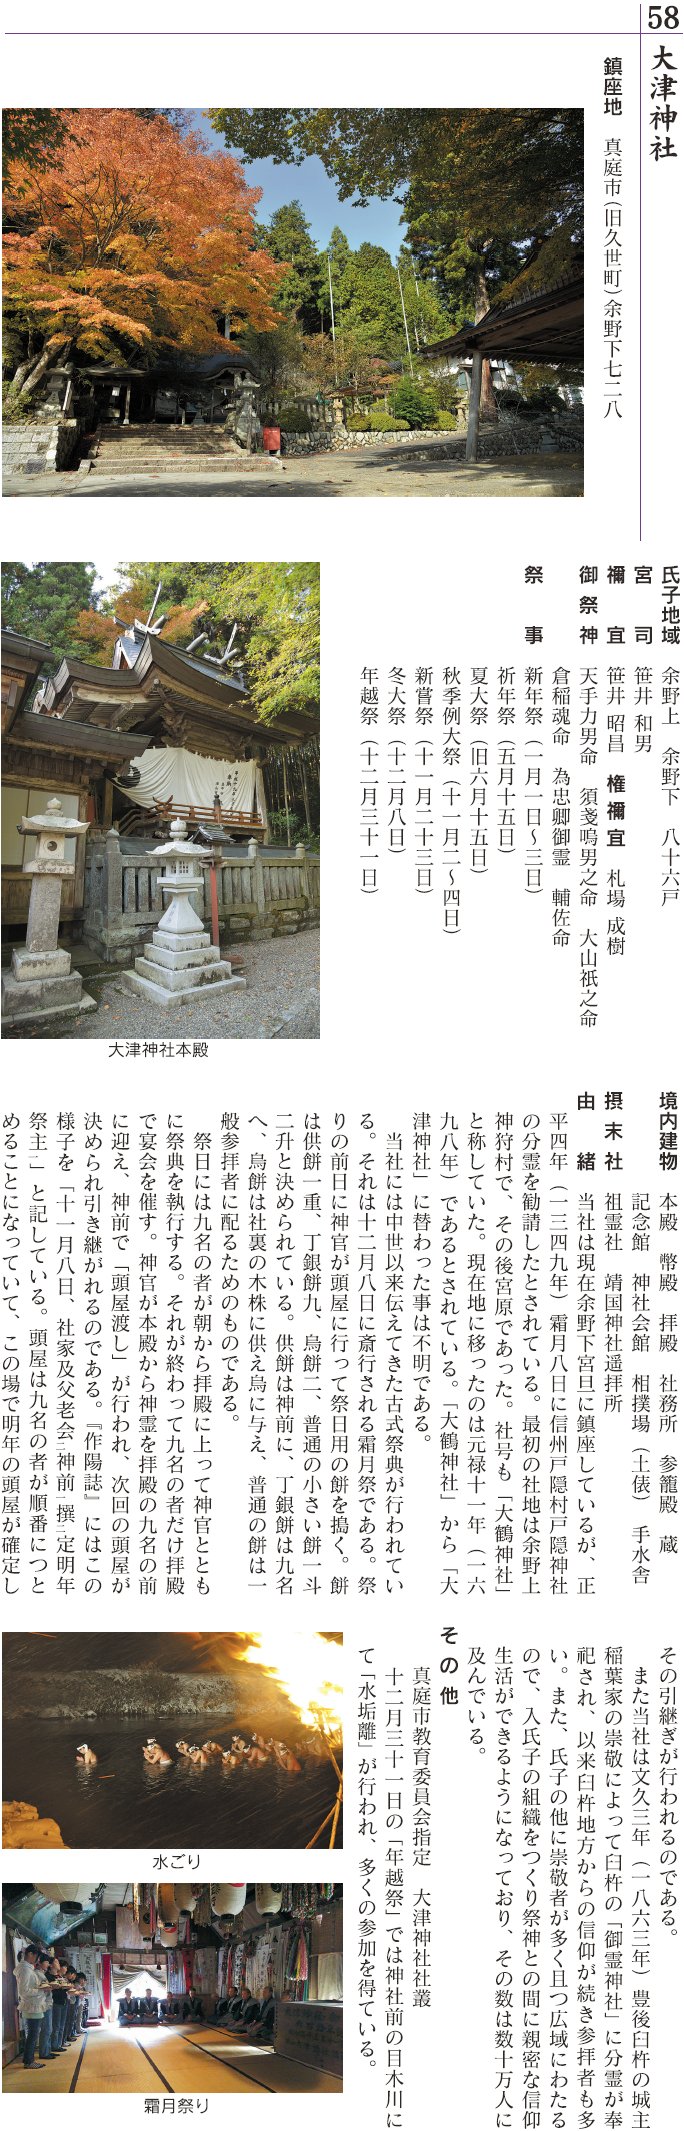 58 大津神社